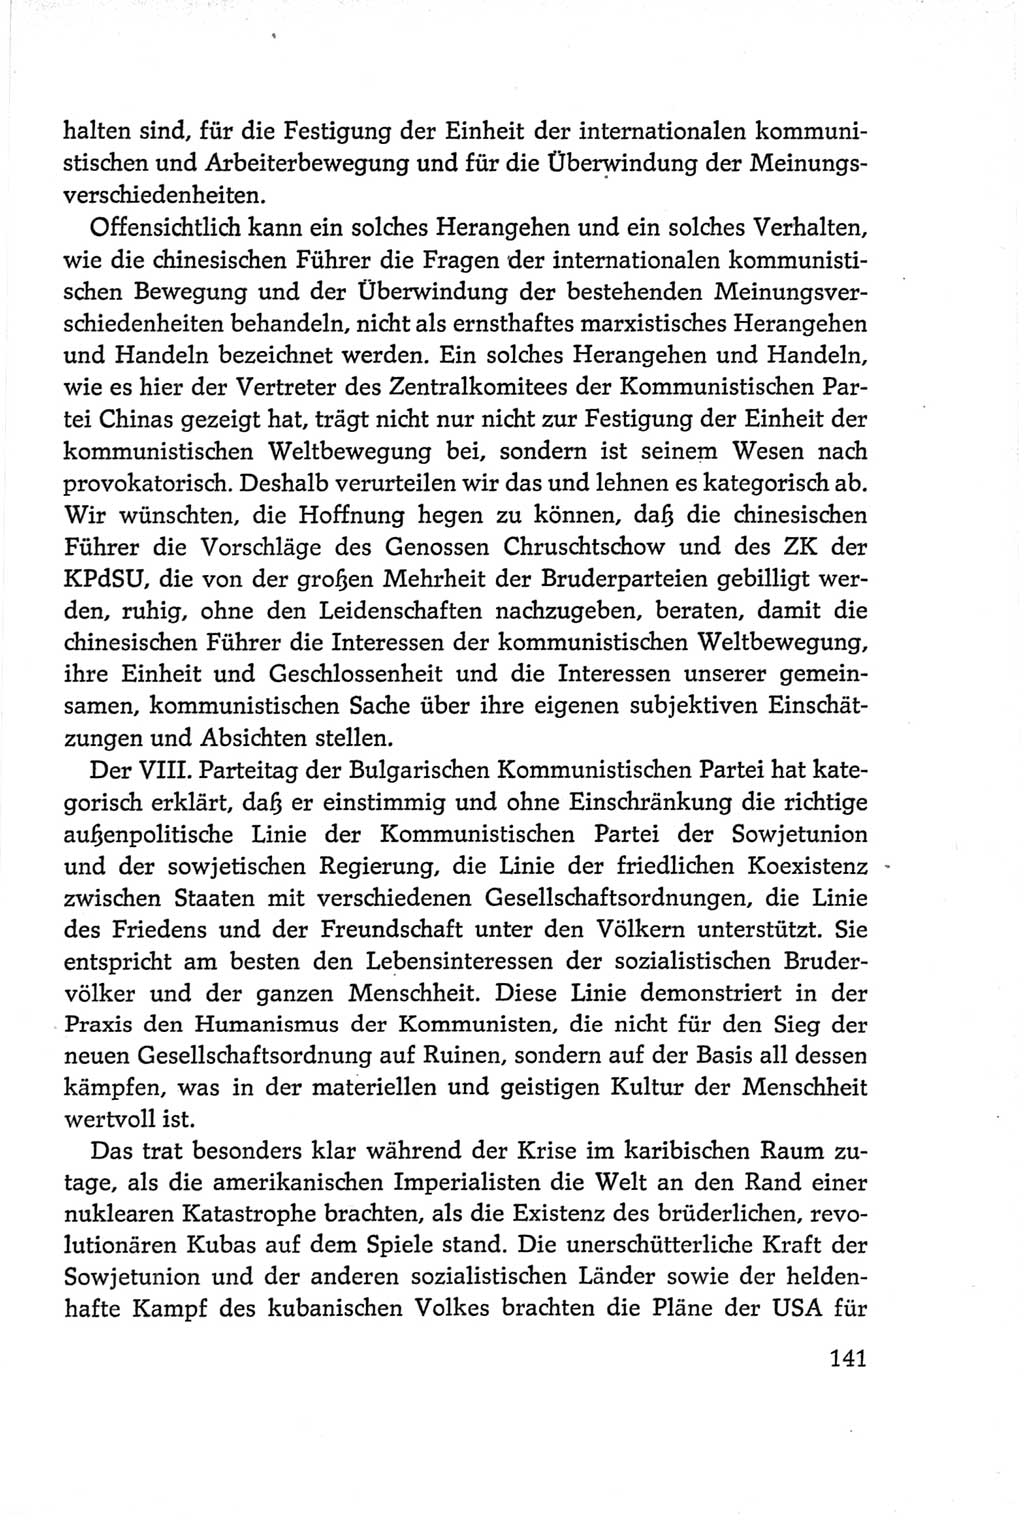 Protokoll der Verhandlungen des Ⅵ. Parteitages der Sozialistischen Einheitspartei Deutschlands (SED) [Deutsche Demokratische Republik (DDR)] 1963, Band Ⅱ, Seite 141 (Prot. Verh. Ⅵ. PT SED DDR 1963, Bd. Ⅱ, S. 141)